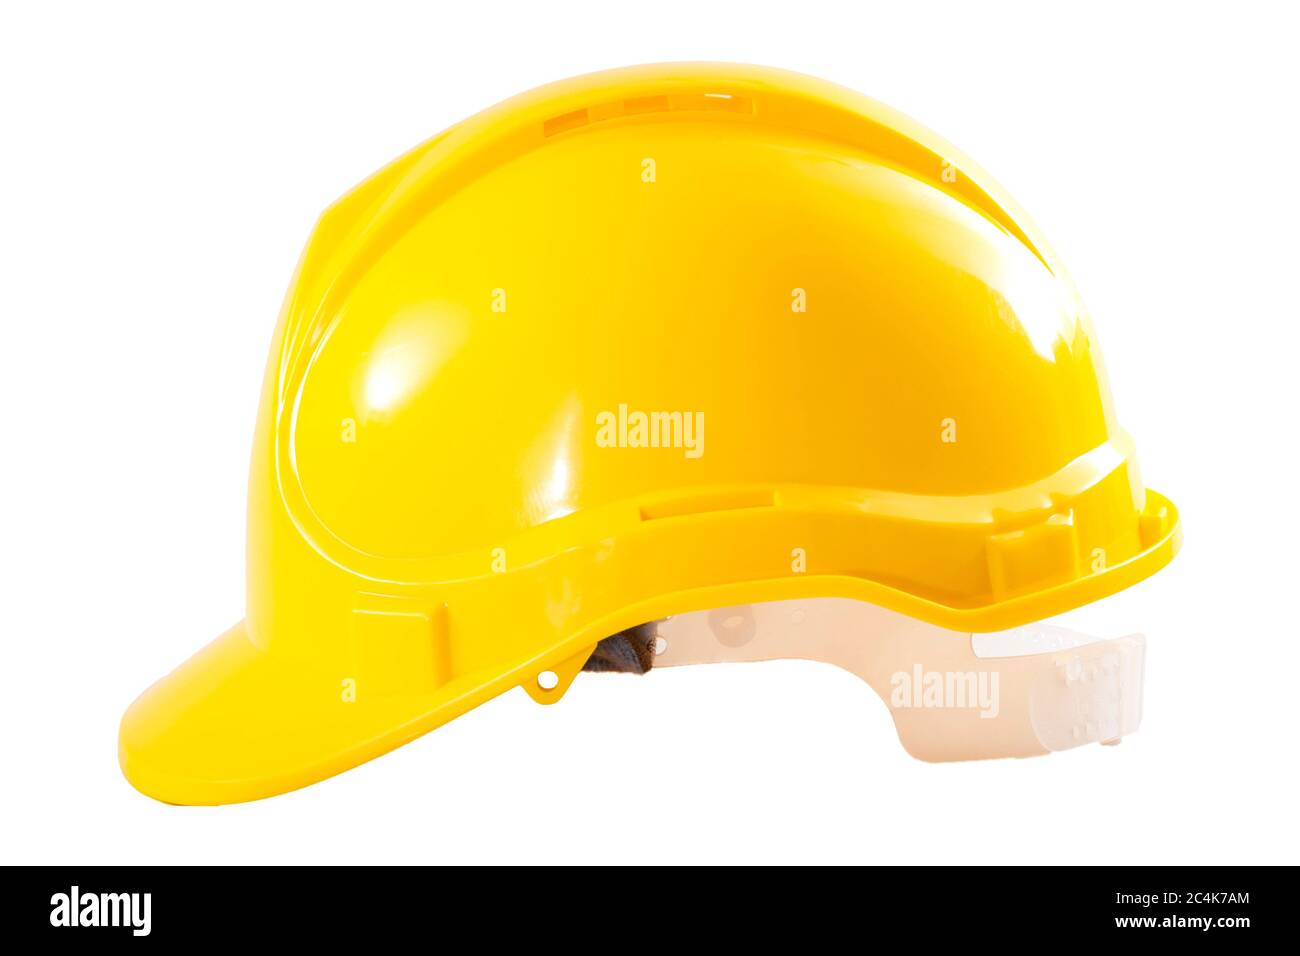 Industriearbeiter oder Baustellenschutzausrüstung Konzept mit Seitenansicht eines gelben Harthuttes isoliert auf weißem Hintergrund mit einem Clipping-Pfad Stockfoto